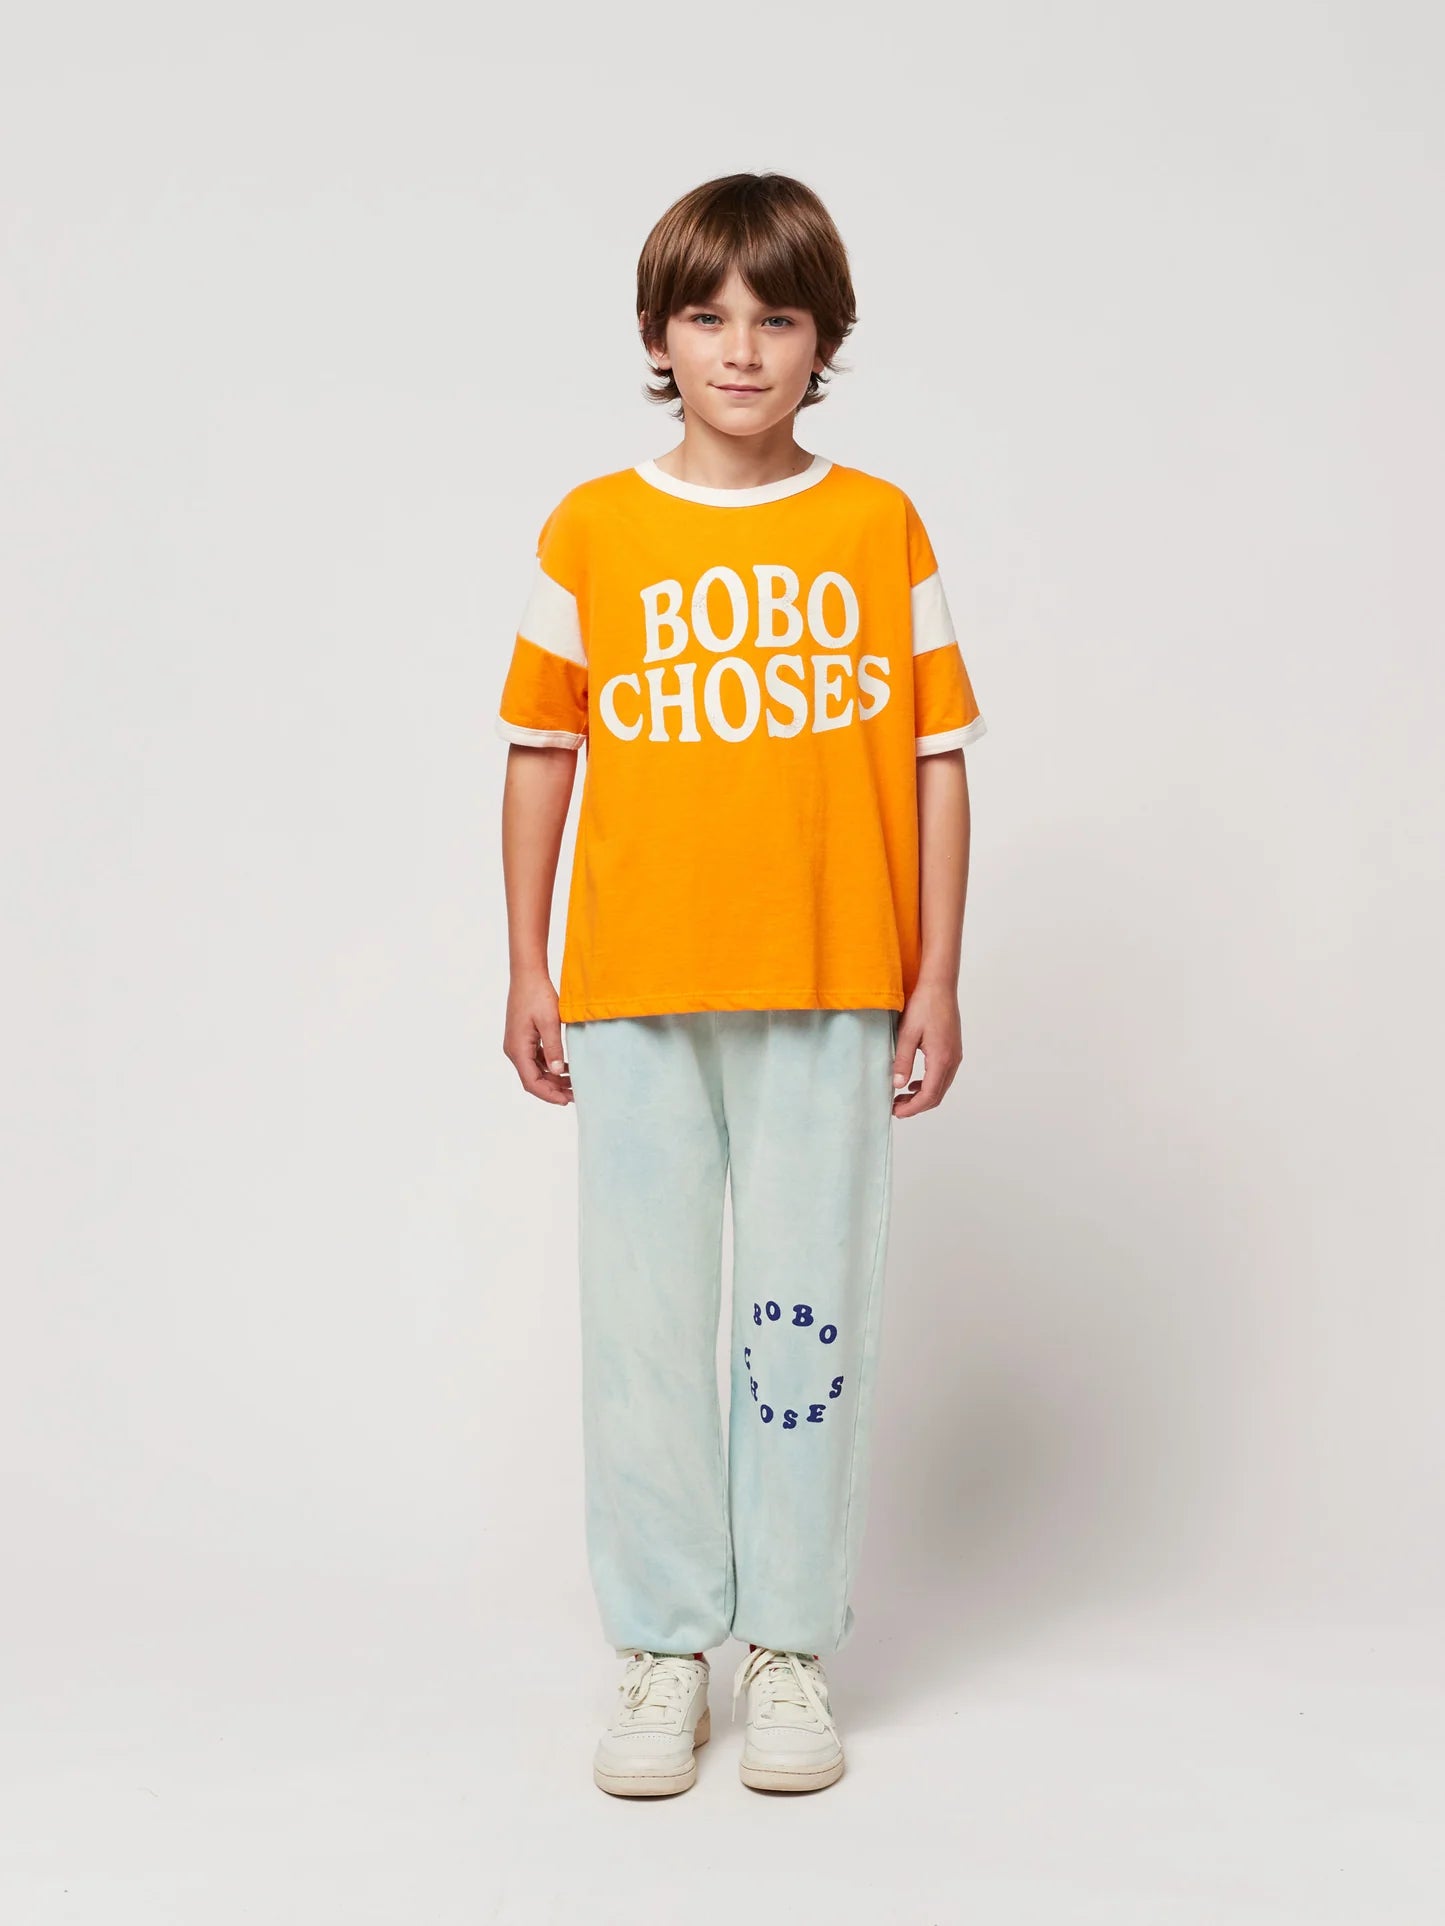 Bobo Choses Circle Jogging Pants by Bobo Choses. Light blue washed, jogger style pants featuring Bobo Choses circle decal.